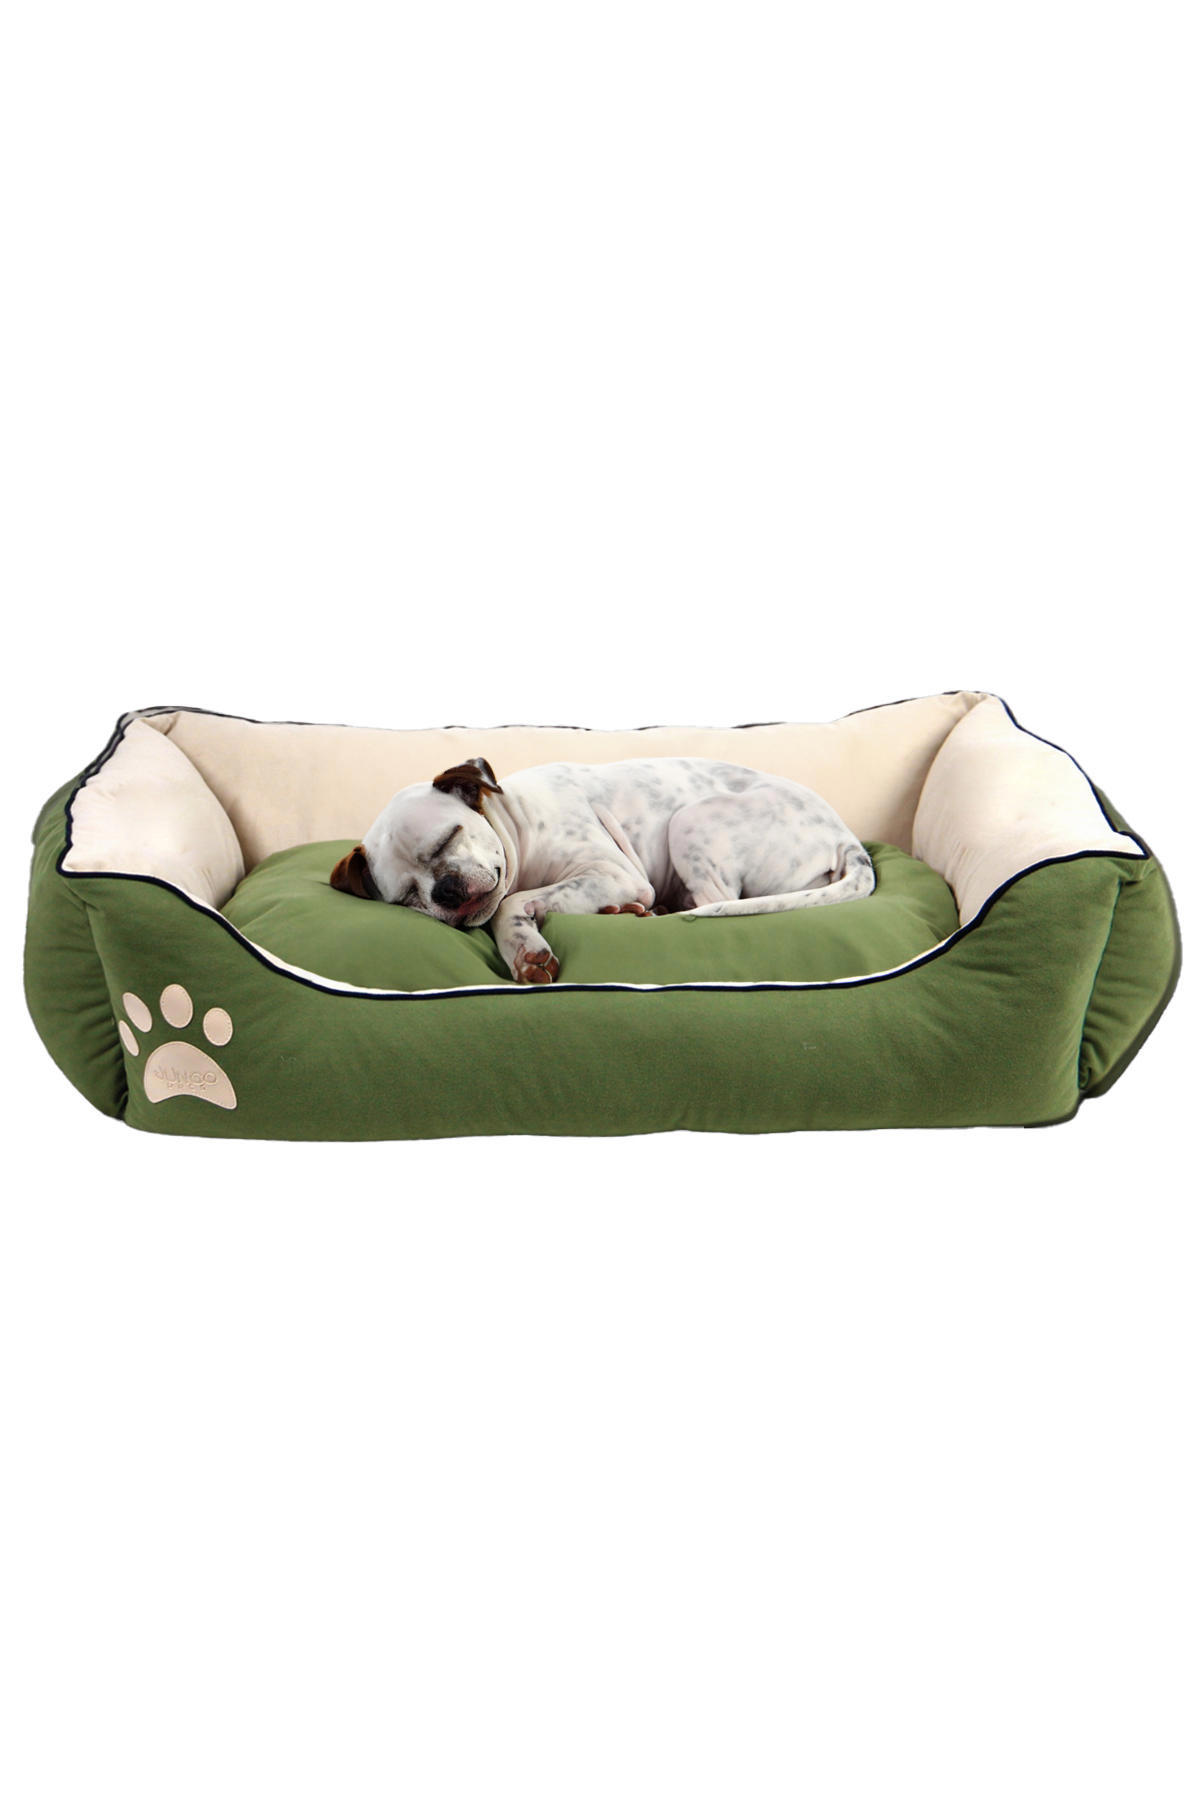 Jungo Pets Lucy Büyük Irk İç Mekan Köpek Yatağı Ekru-Yeşil